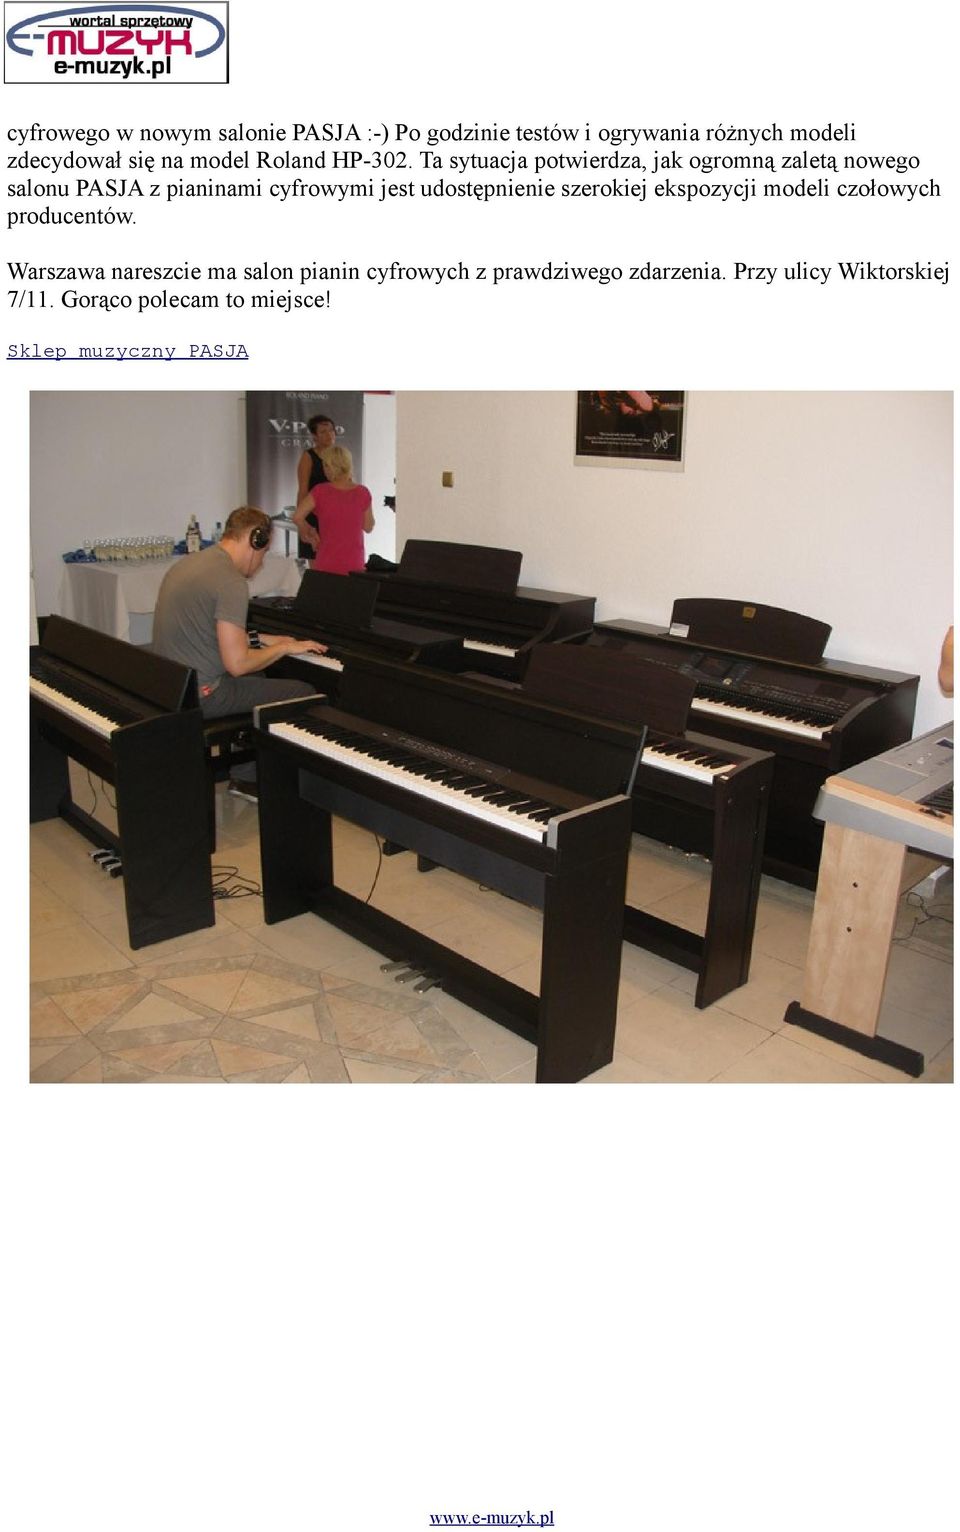 Ta sytuacja potwierdza, jak ogromną zaletą nowego salonu PASJA z pianinami cyfrowymi jest udostępnienie